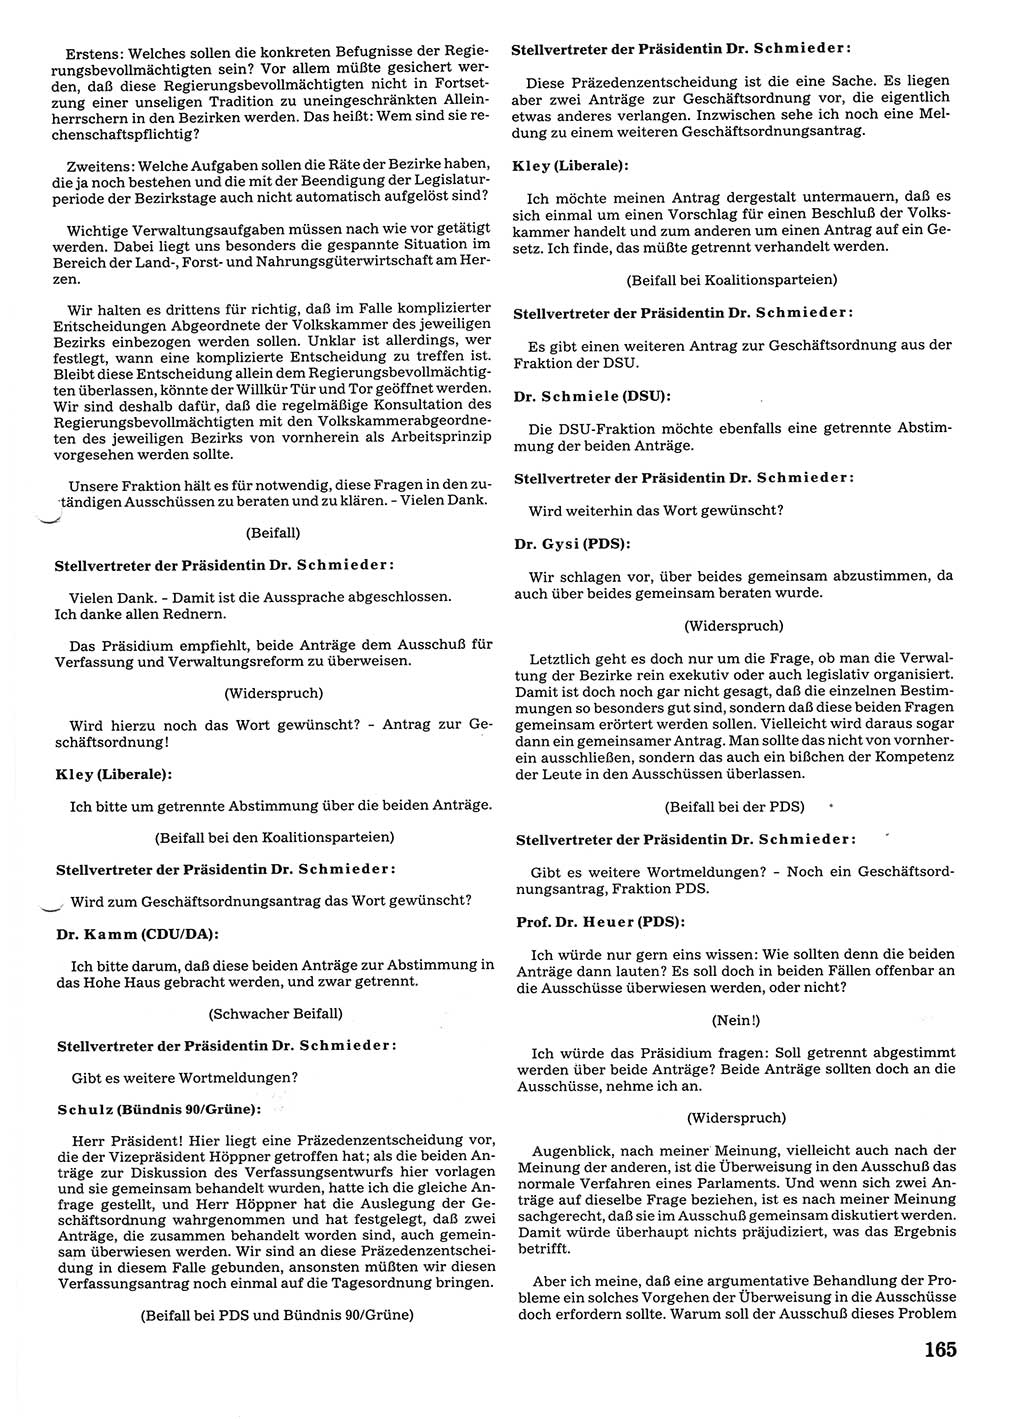 Tagungen der Volkskammer (VK) der Deutschen Demokratischen Republik (DDR), 10. Wahlperiode 1990, Seite 165 (VK. DDR 10. WP. 1990, Prot. Tg. 1-38, 5.4.-2.10.1990, S. 165)